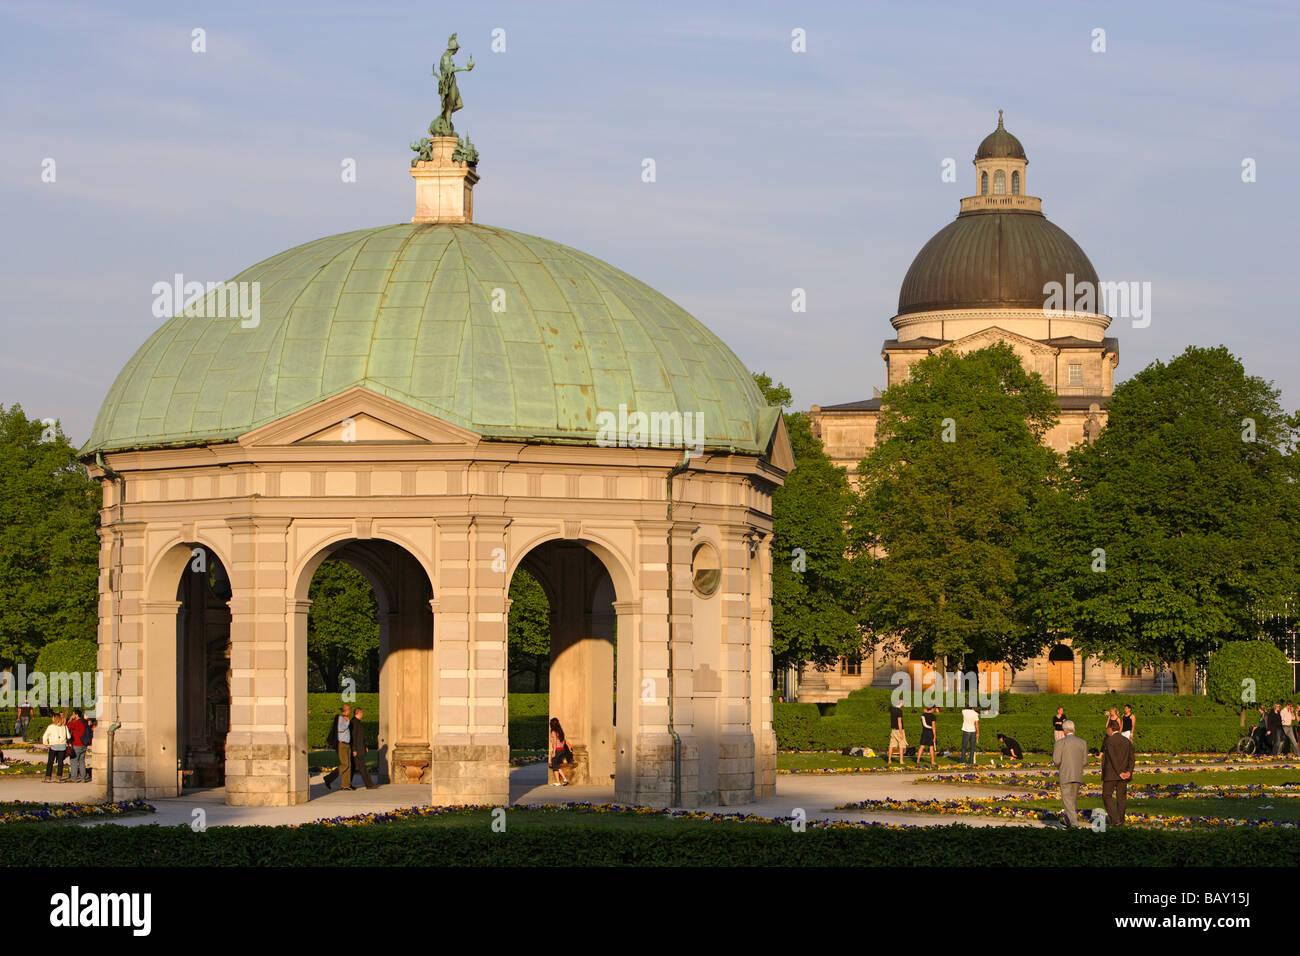 Pavillon im Hofgarten vor Kuppel der Bayerischen Staatskanzlei, München, Bayern, Deutschland Stockfoto